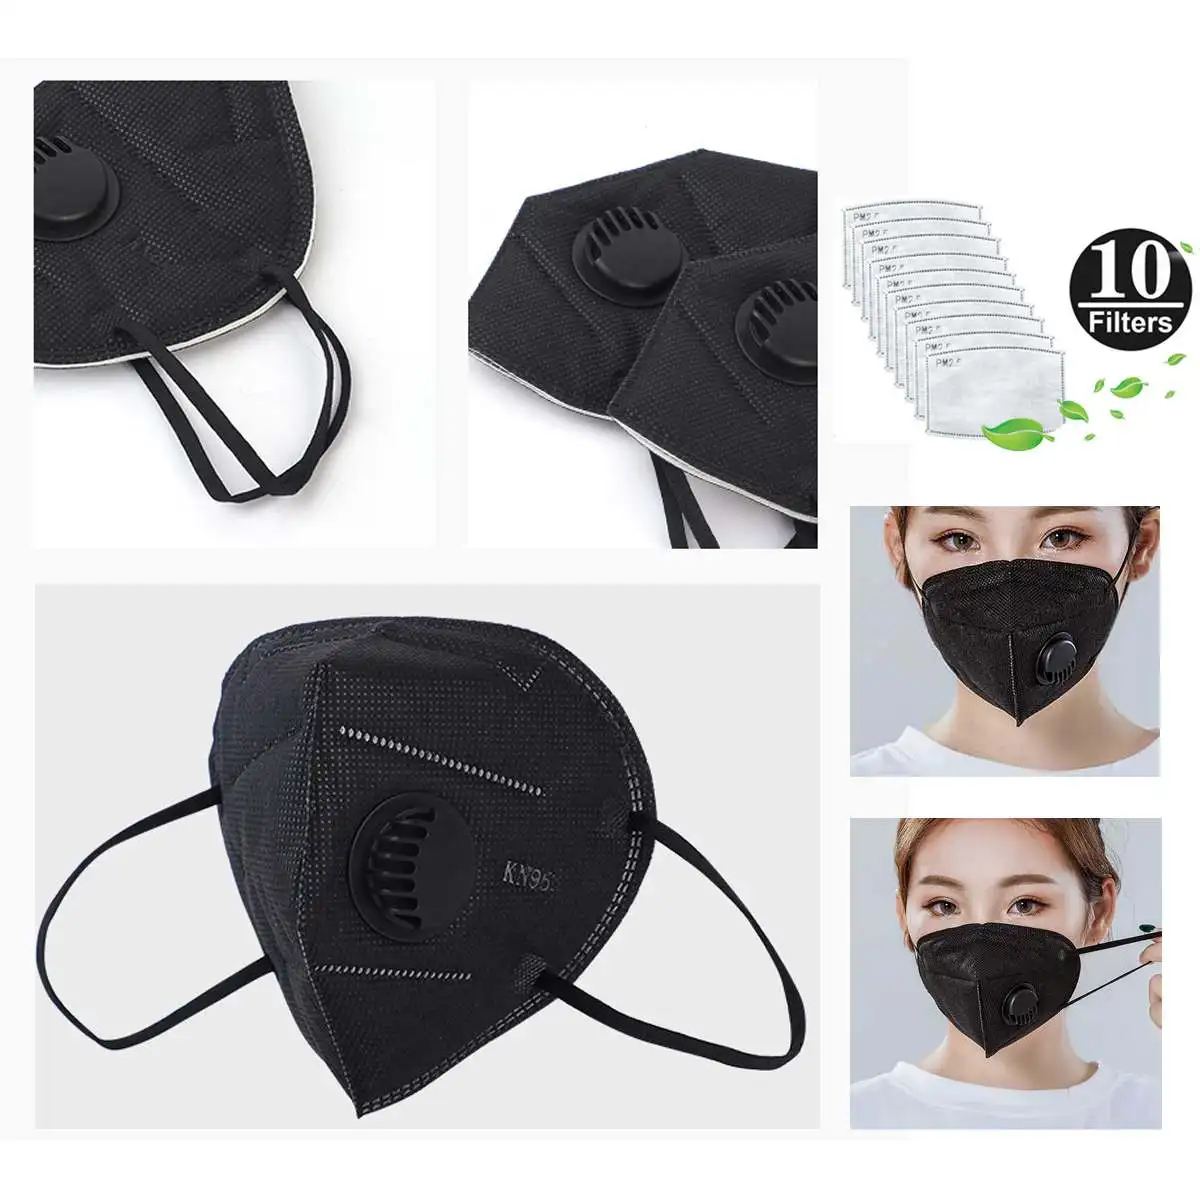 Взрослая маска PM2.5 против пыли респираторная 3D обрезанная дышащая маска с клапаном w/Free 10 шт. сменная маска с активированным углем фильтр